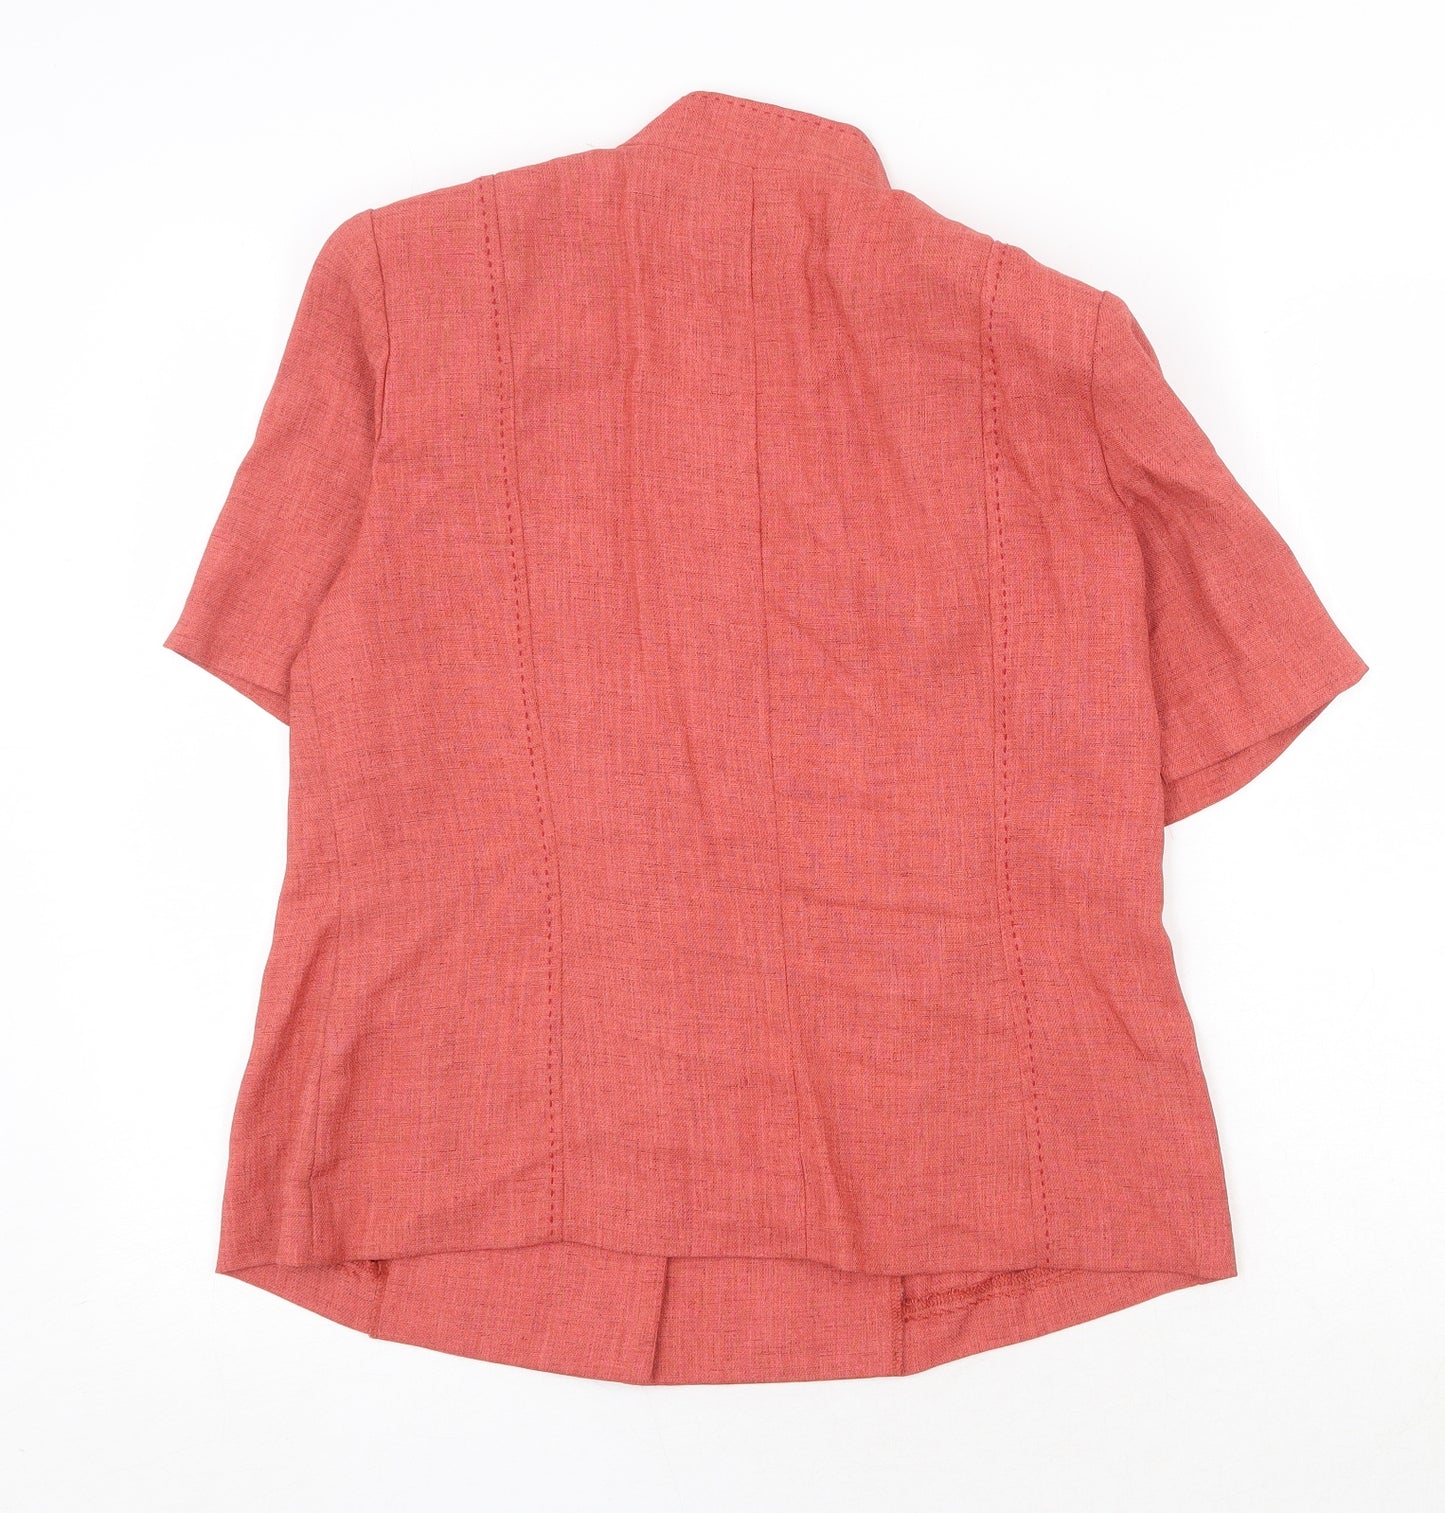 Roman Originals Womens Orange Polyester Jacket Blazer Size 14